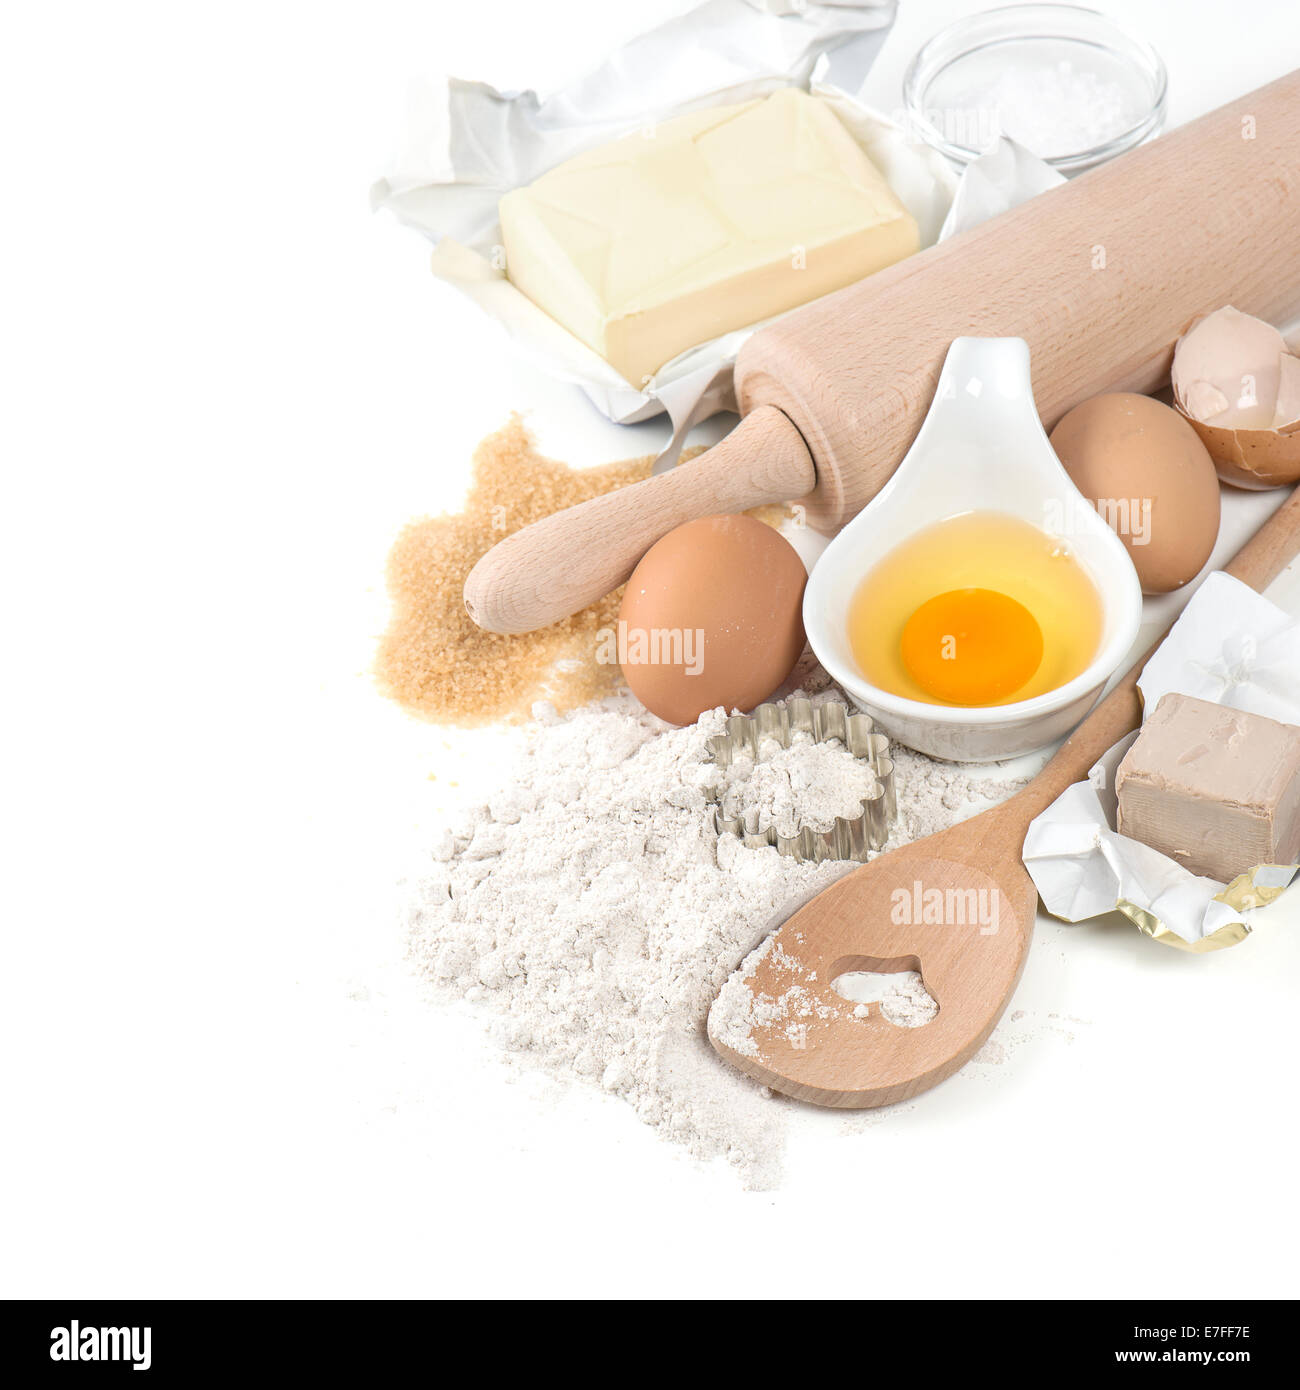 La cottura ingredienti uova, farina, zucchero, burro, lievito. preparazione di pasta Foto Stock